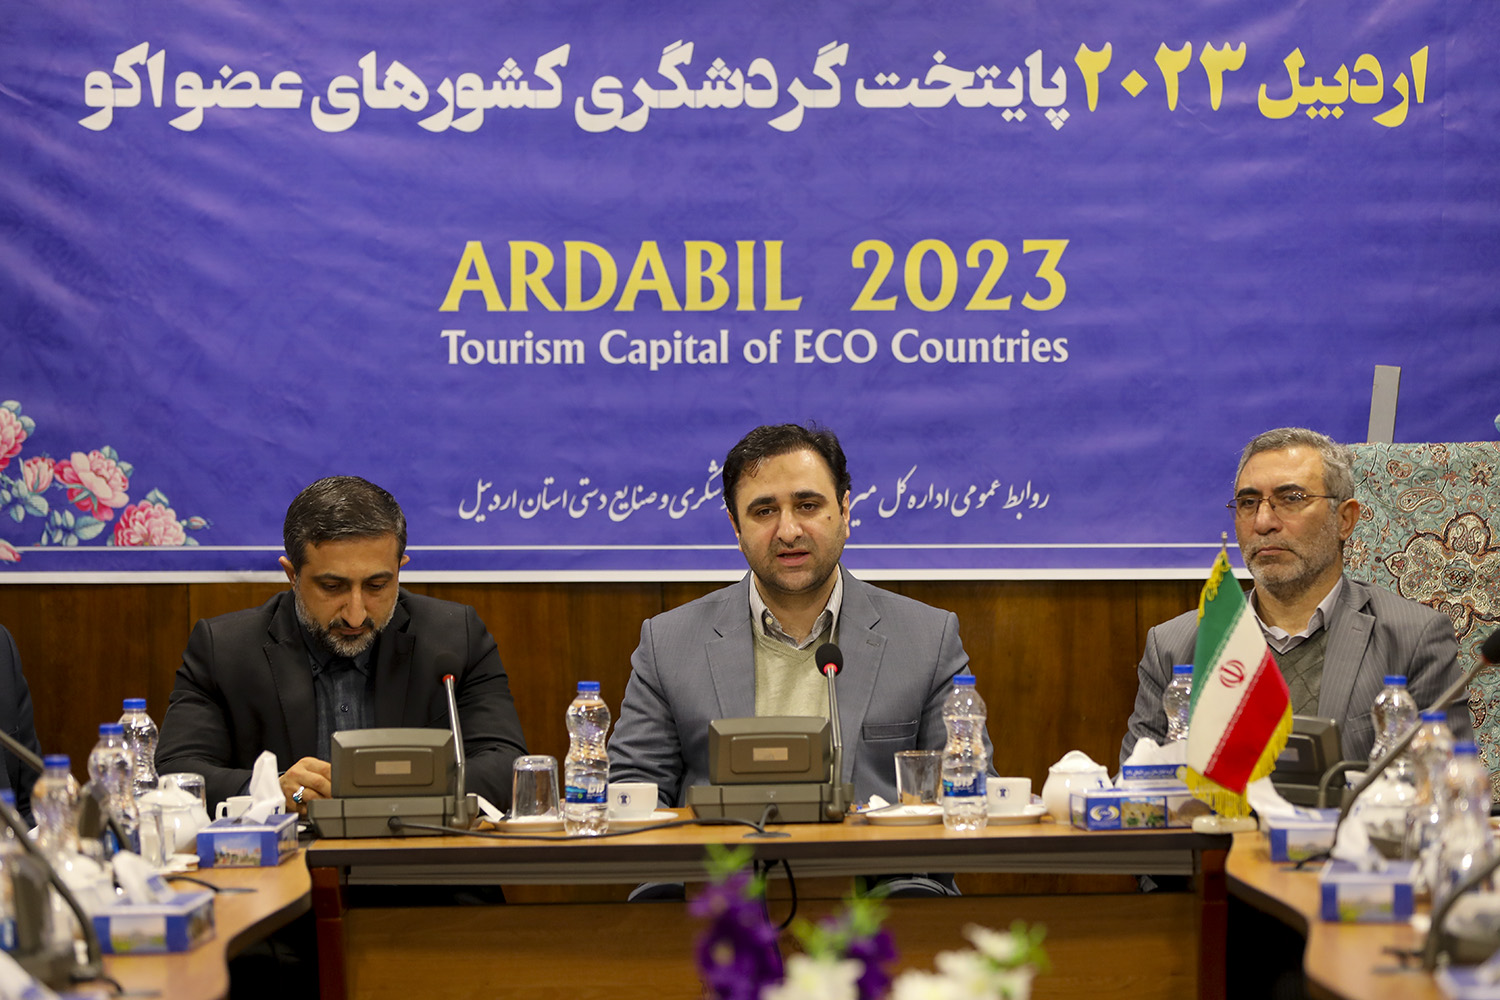 رویداد اردبیل 2023 یک فرصت مهم برای اردبیل و ایران